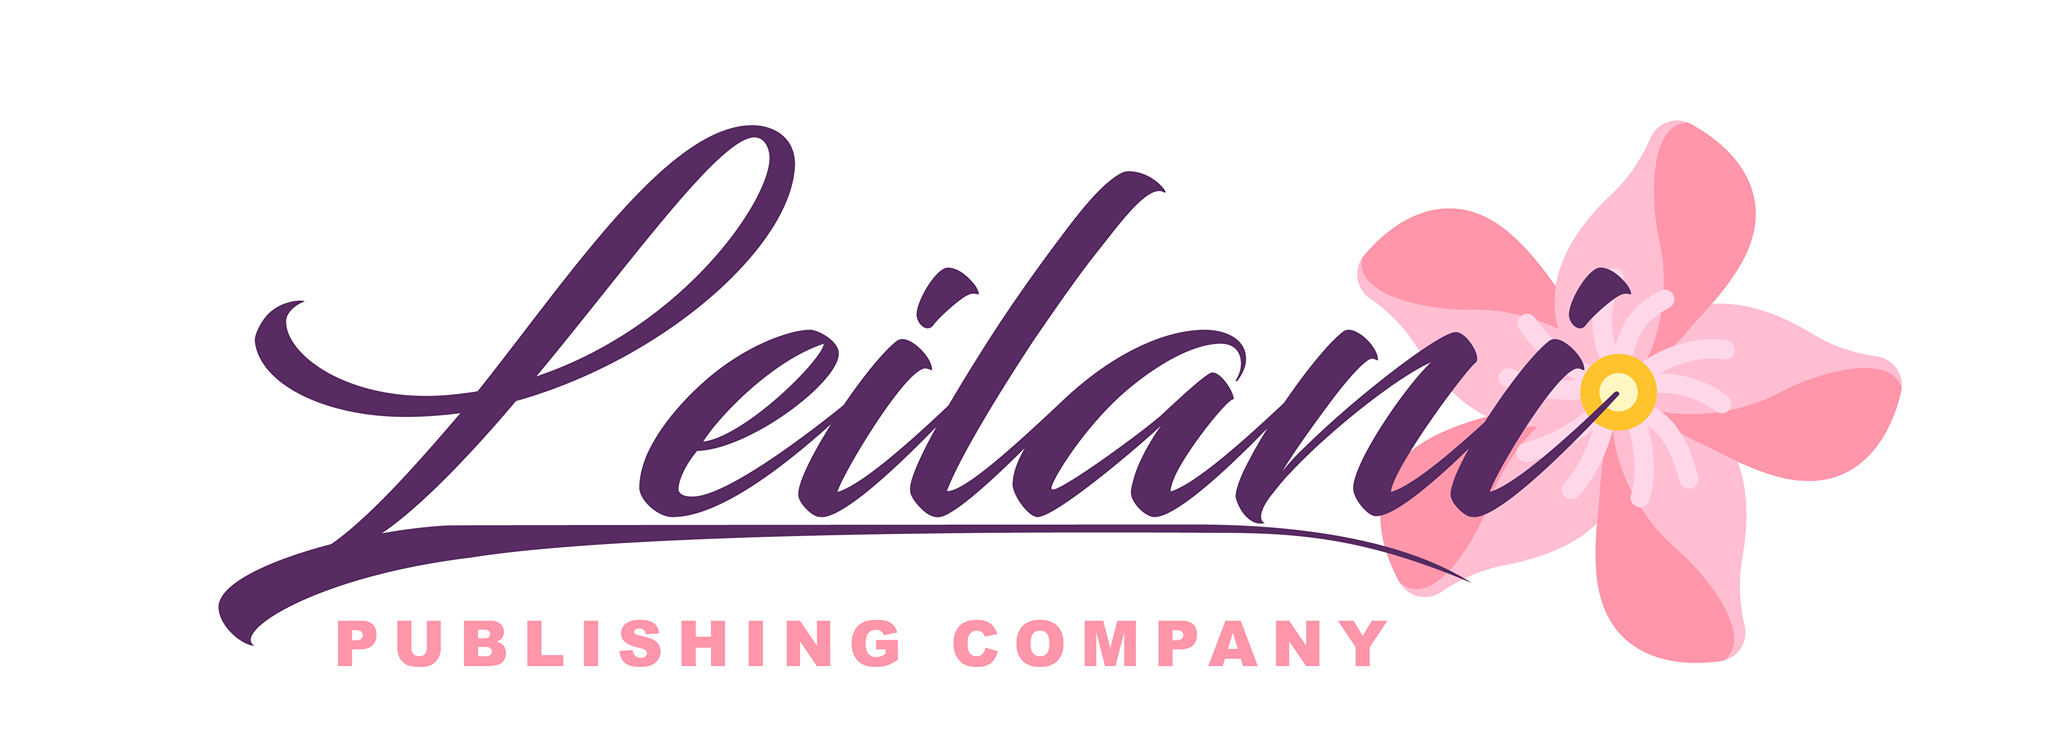 Leilani Publishing Co.